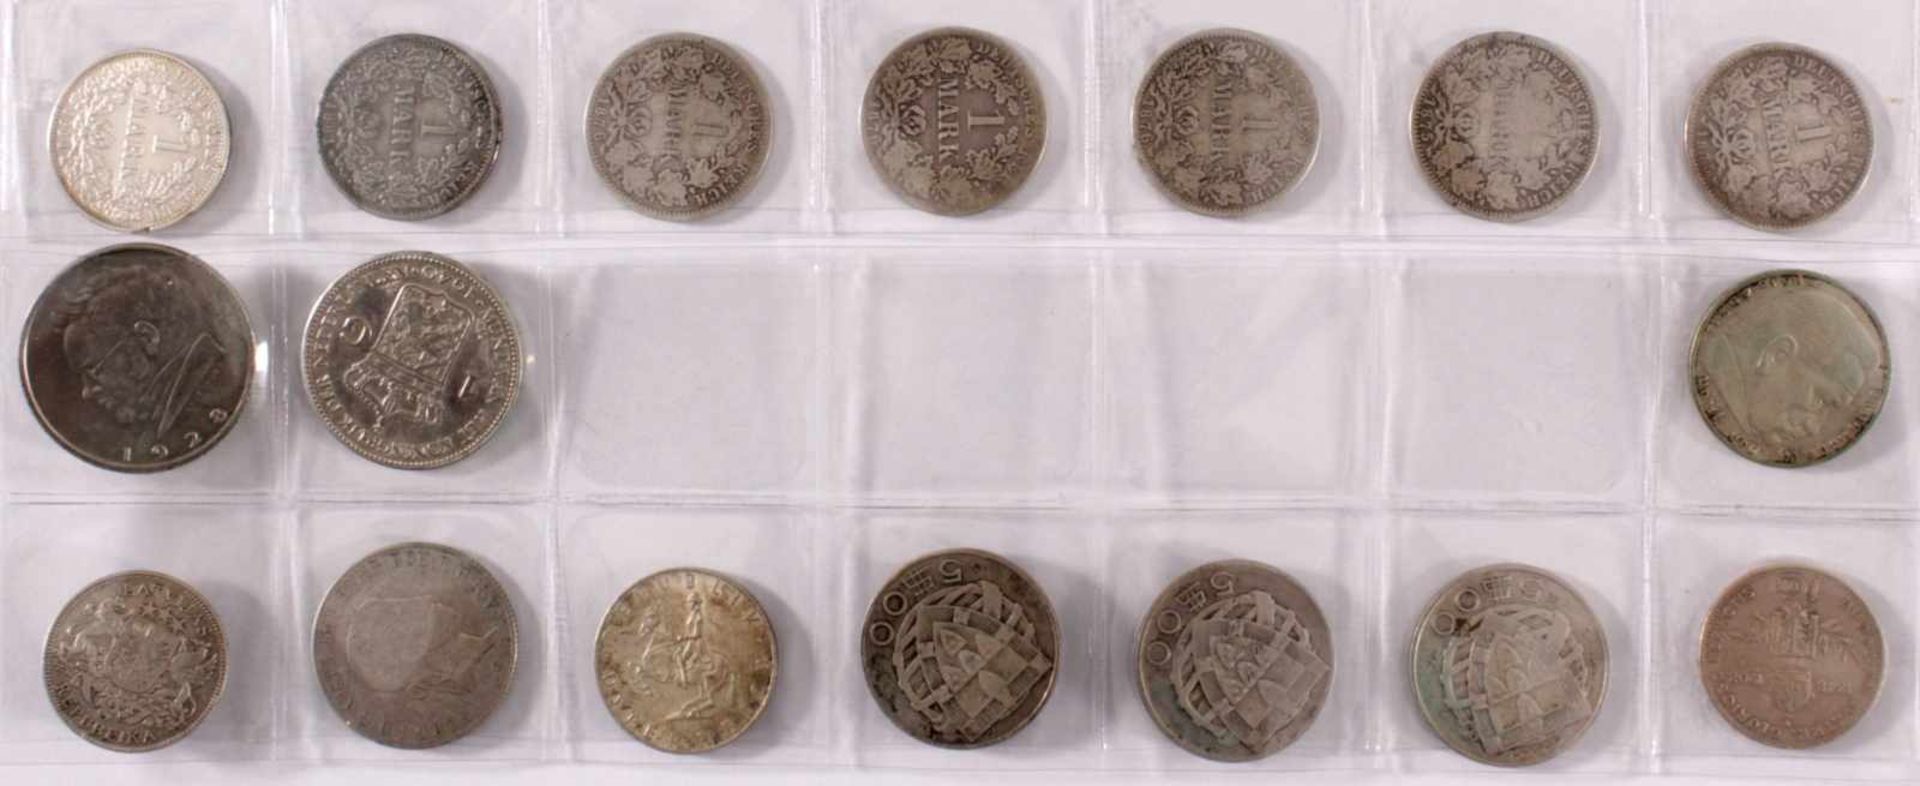 Sammlung Silbermünzen ab 187517 Münzen. Deutsches Reich, Portugal,Österreich, Lettland,Niederlande